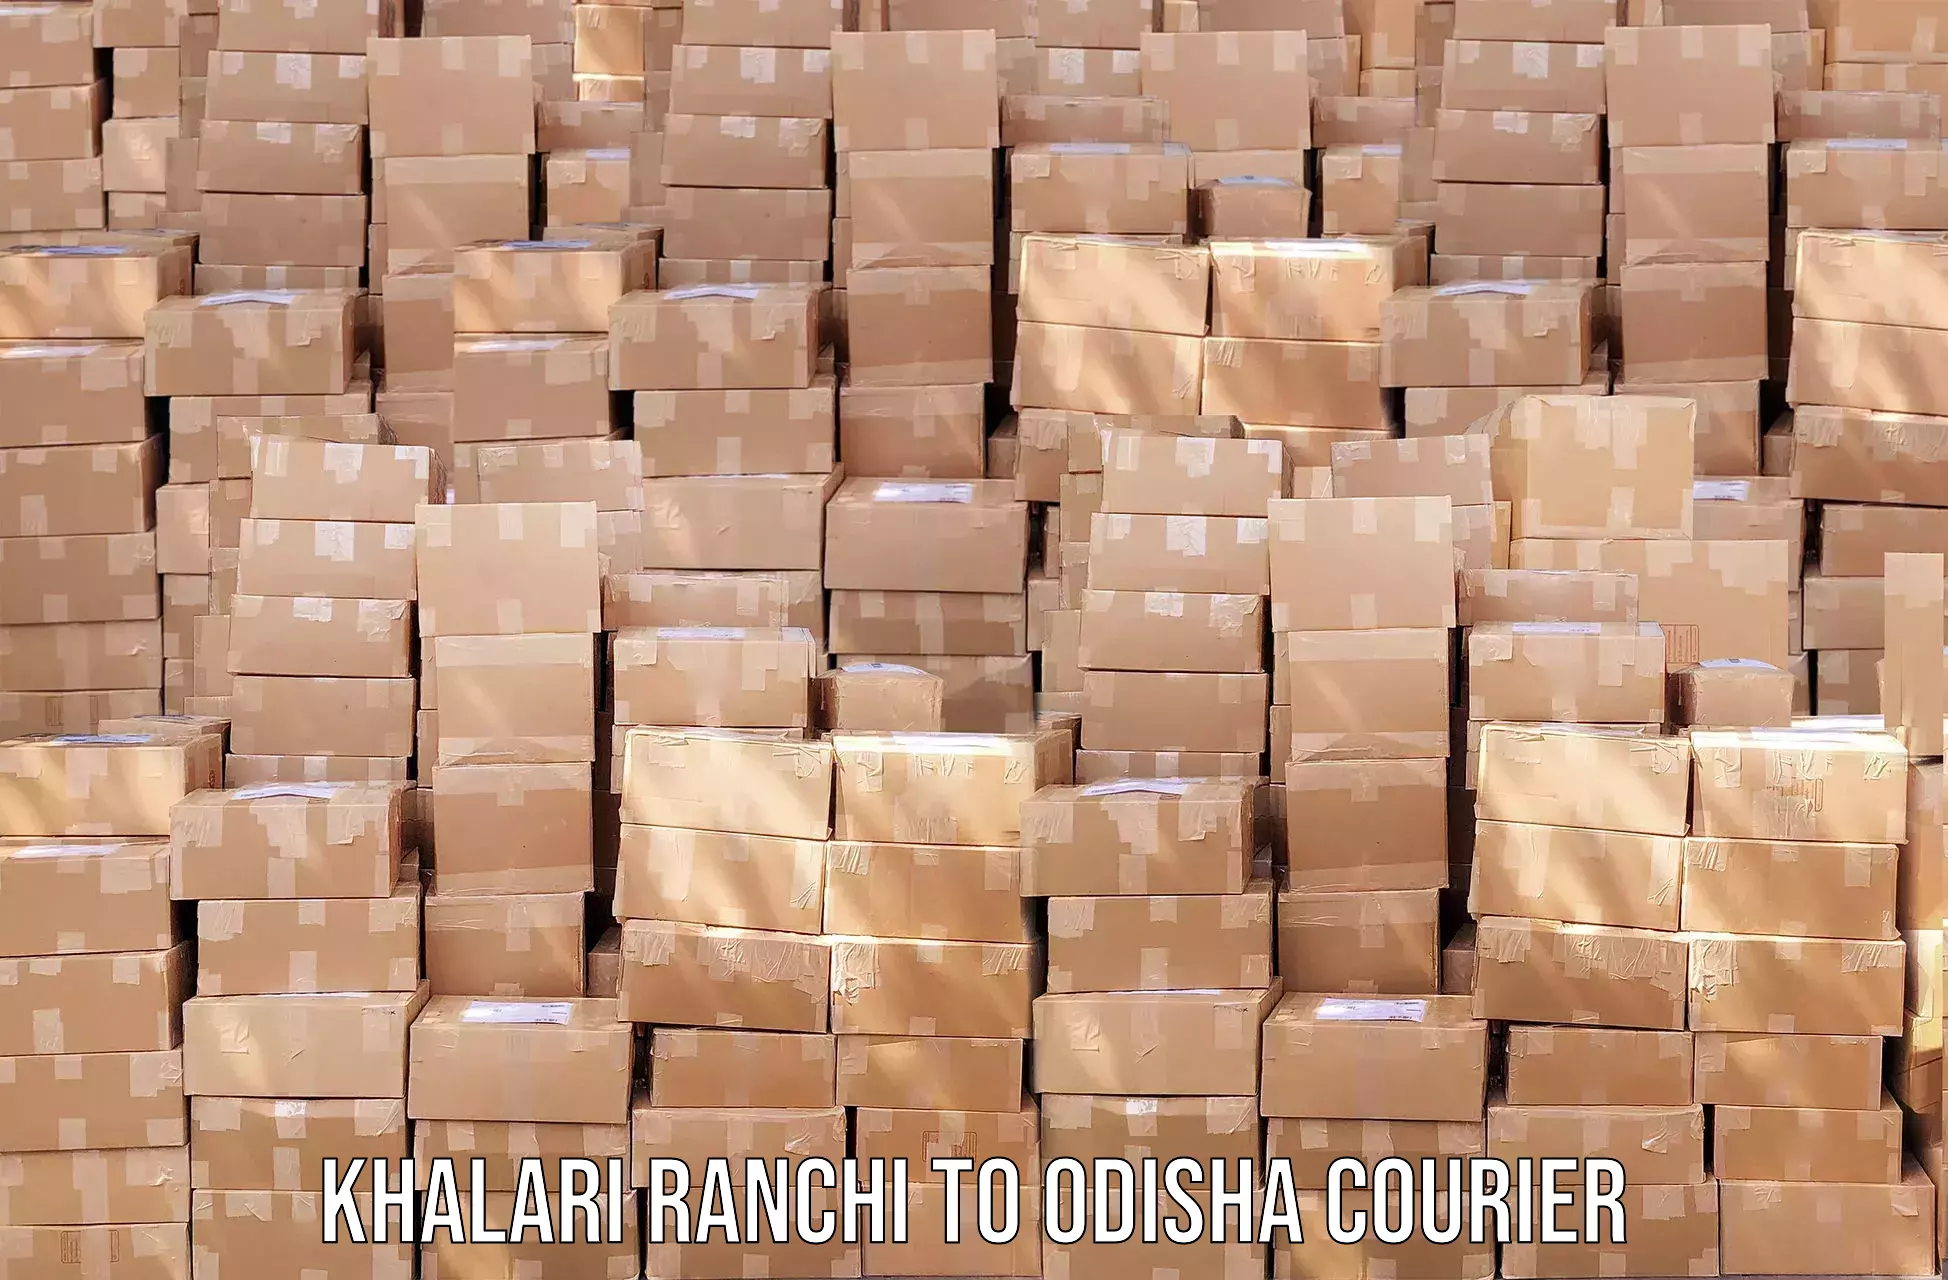 Digital courier platforms Khalari Ranchi to Jajpur